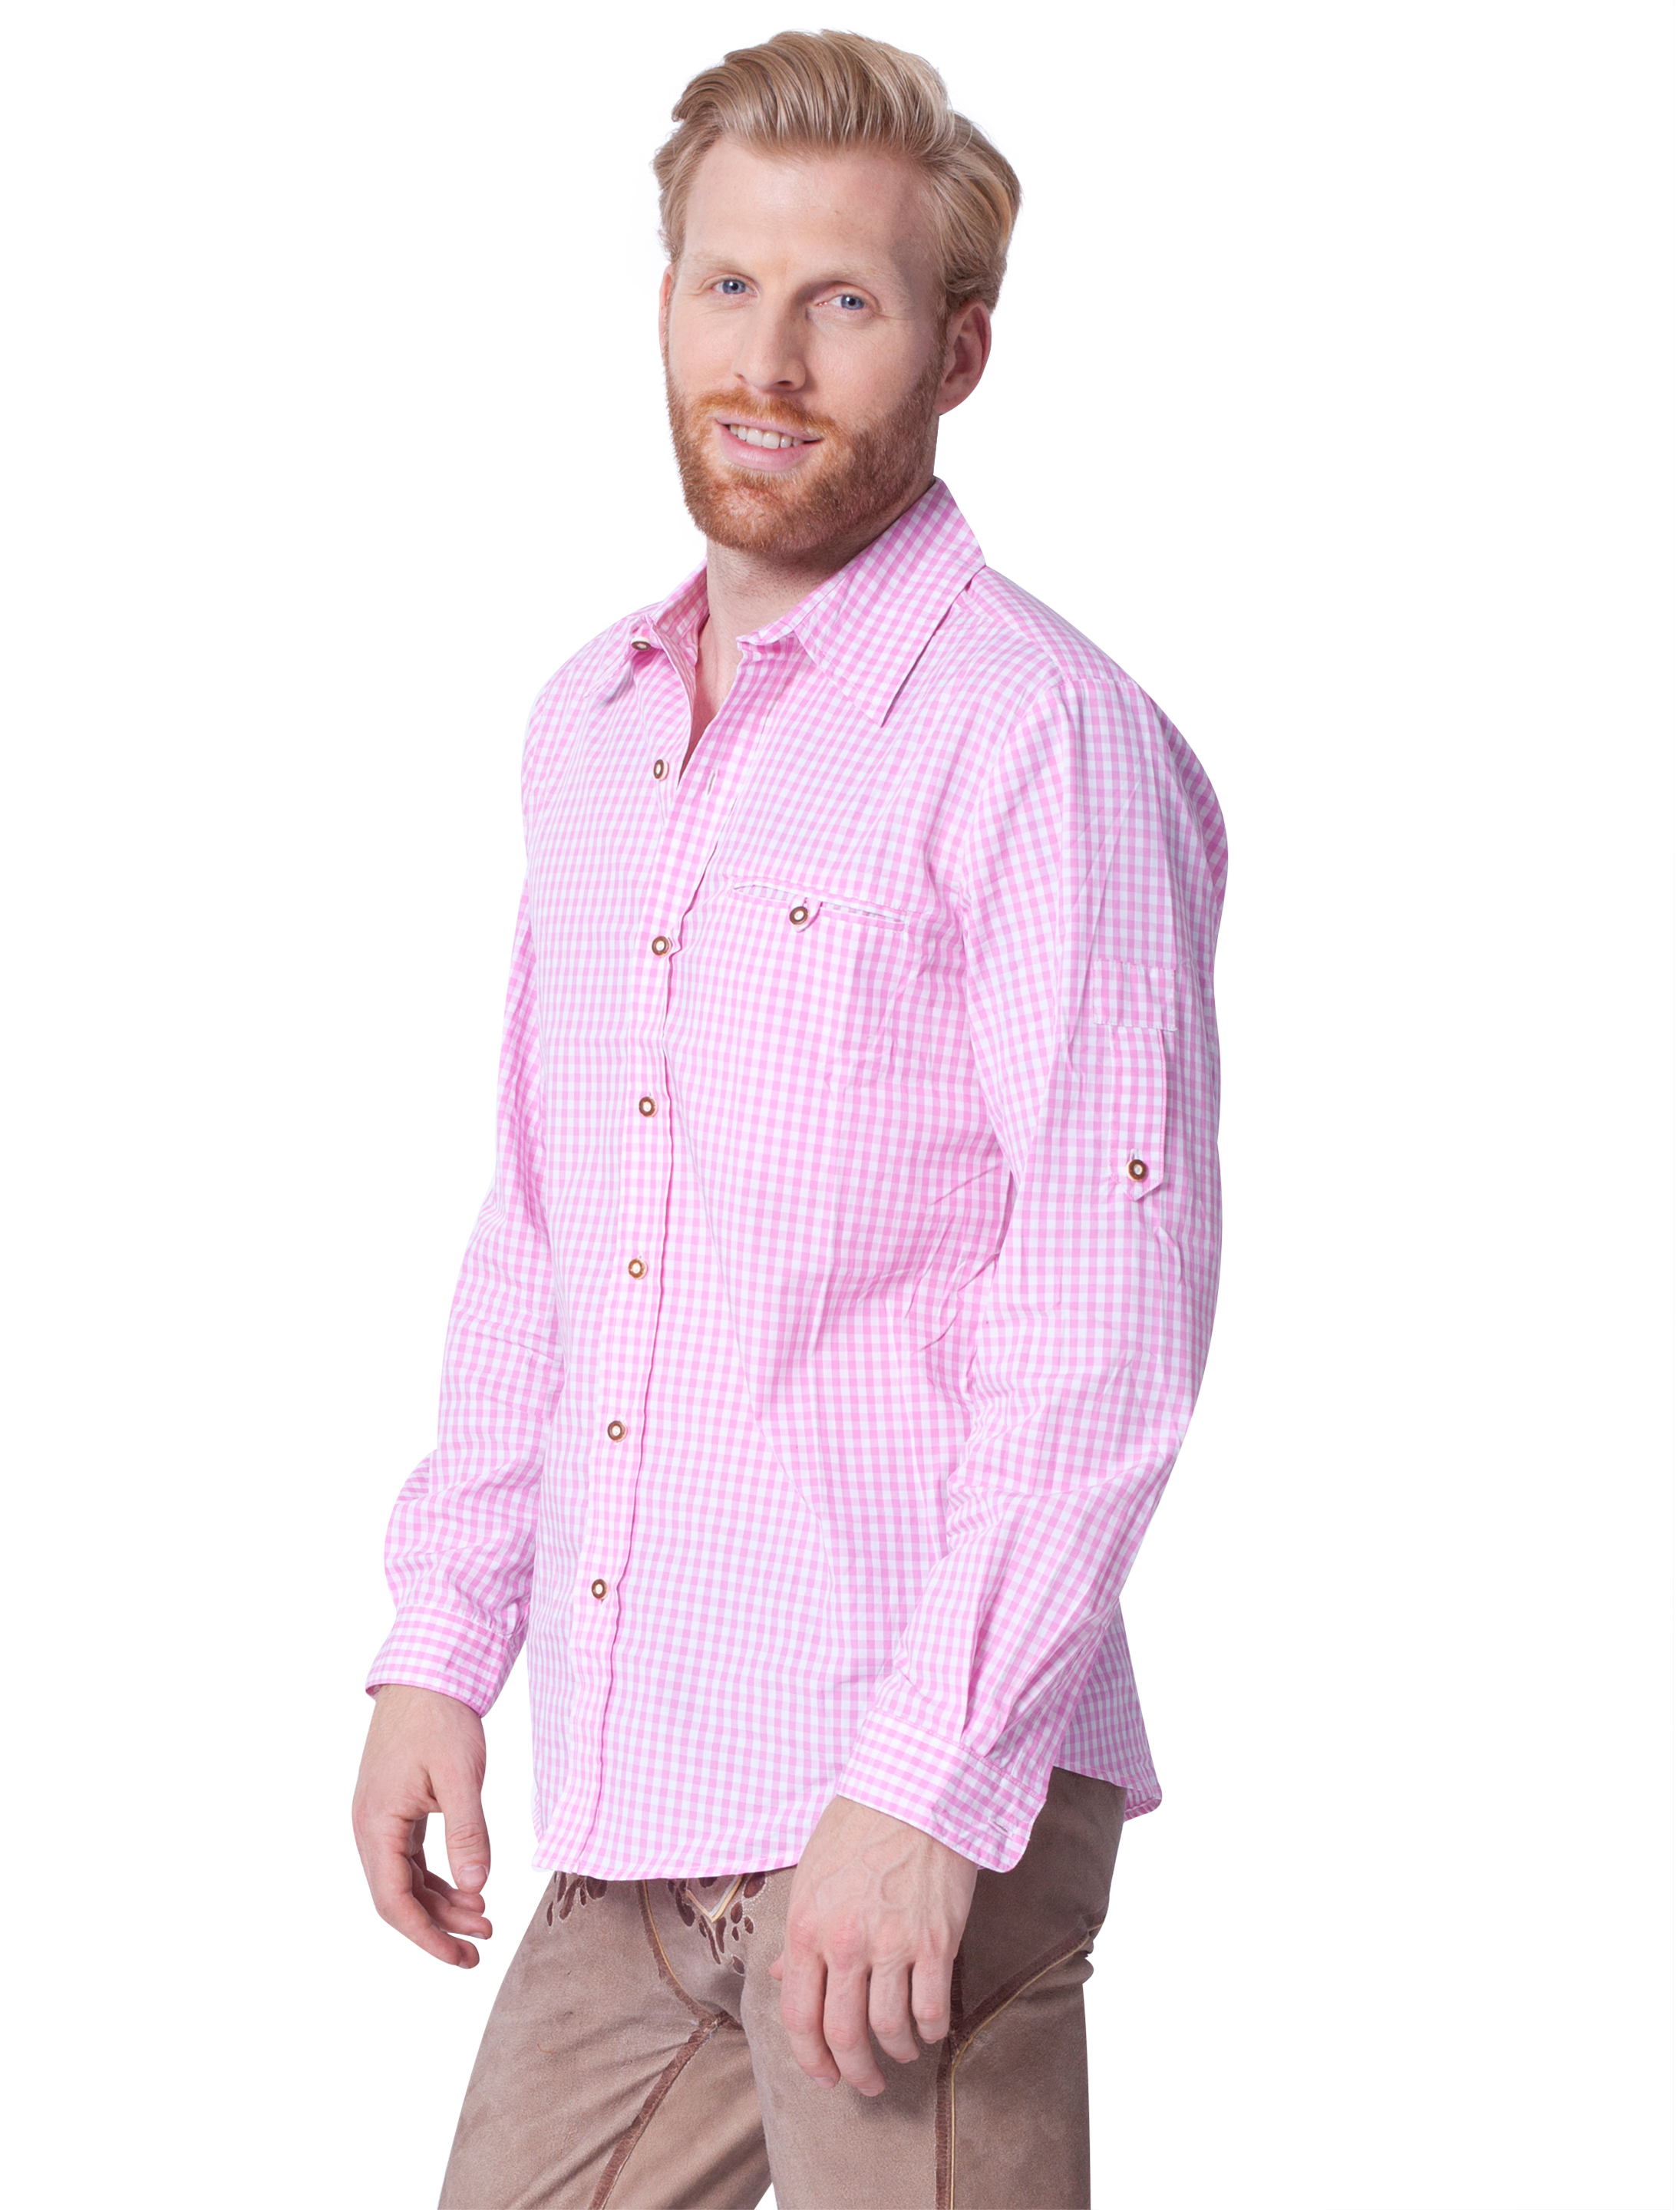 Trachtenhemd Herren pink/weiß M